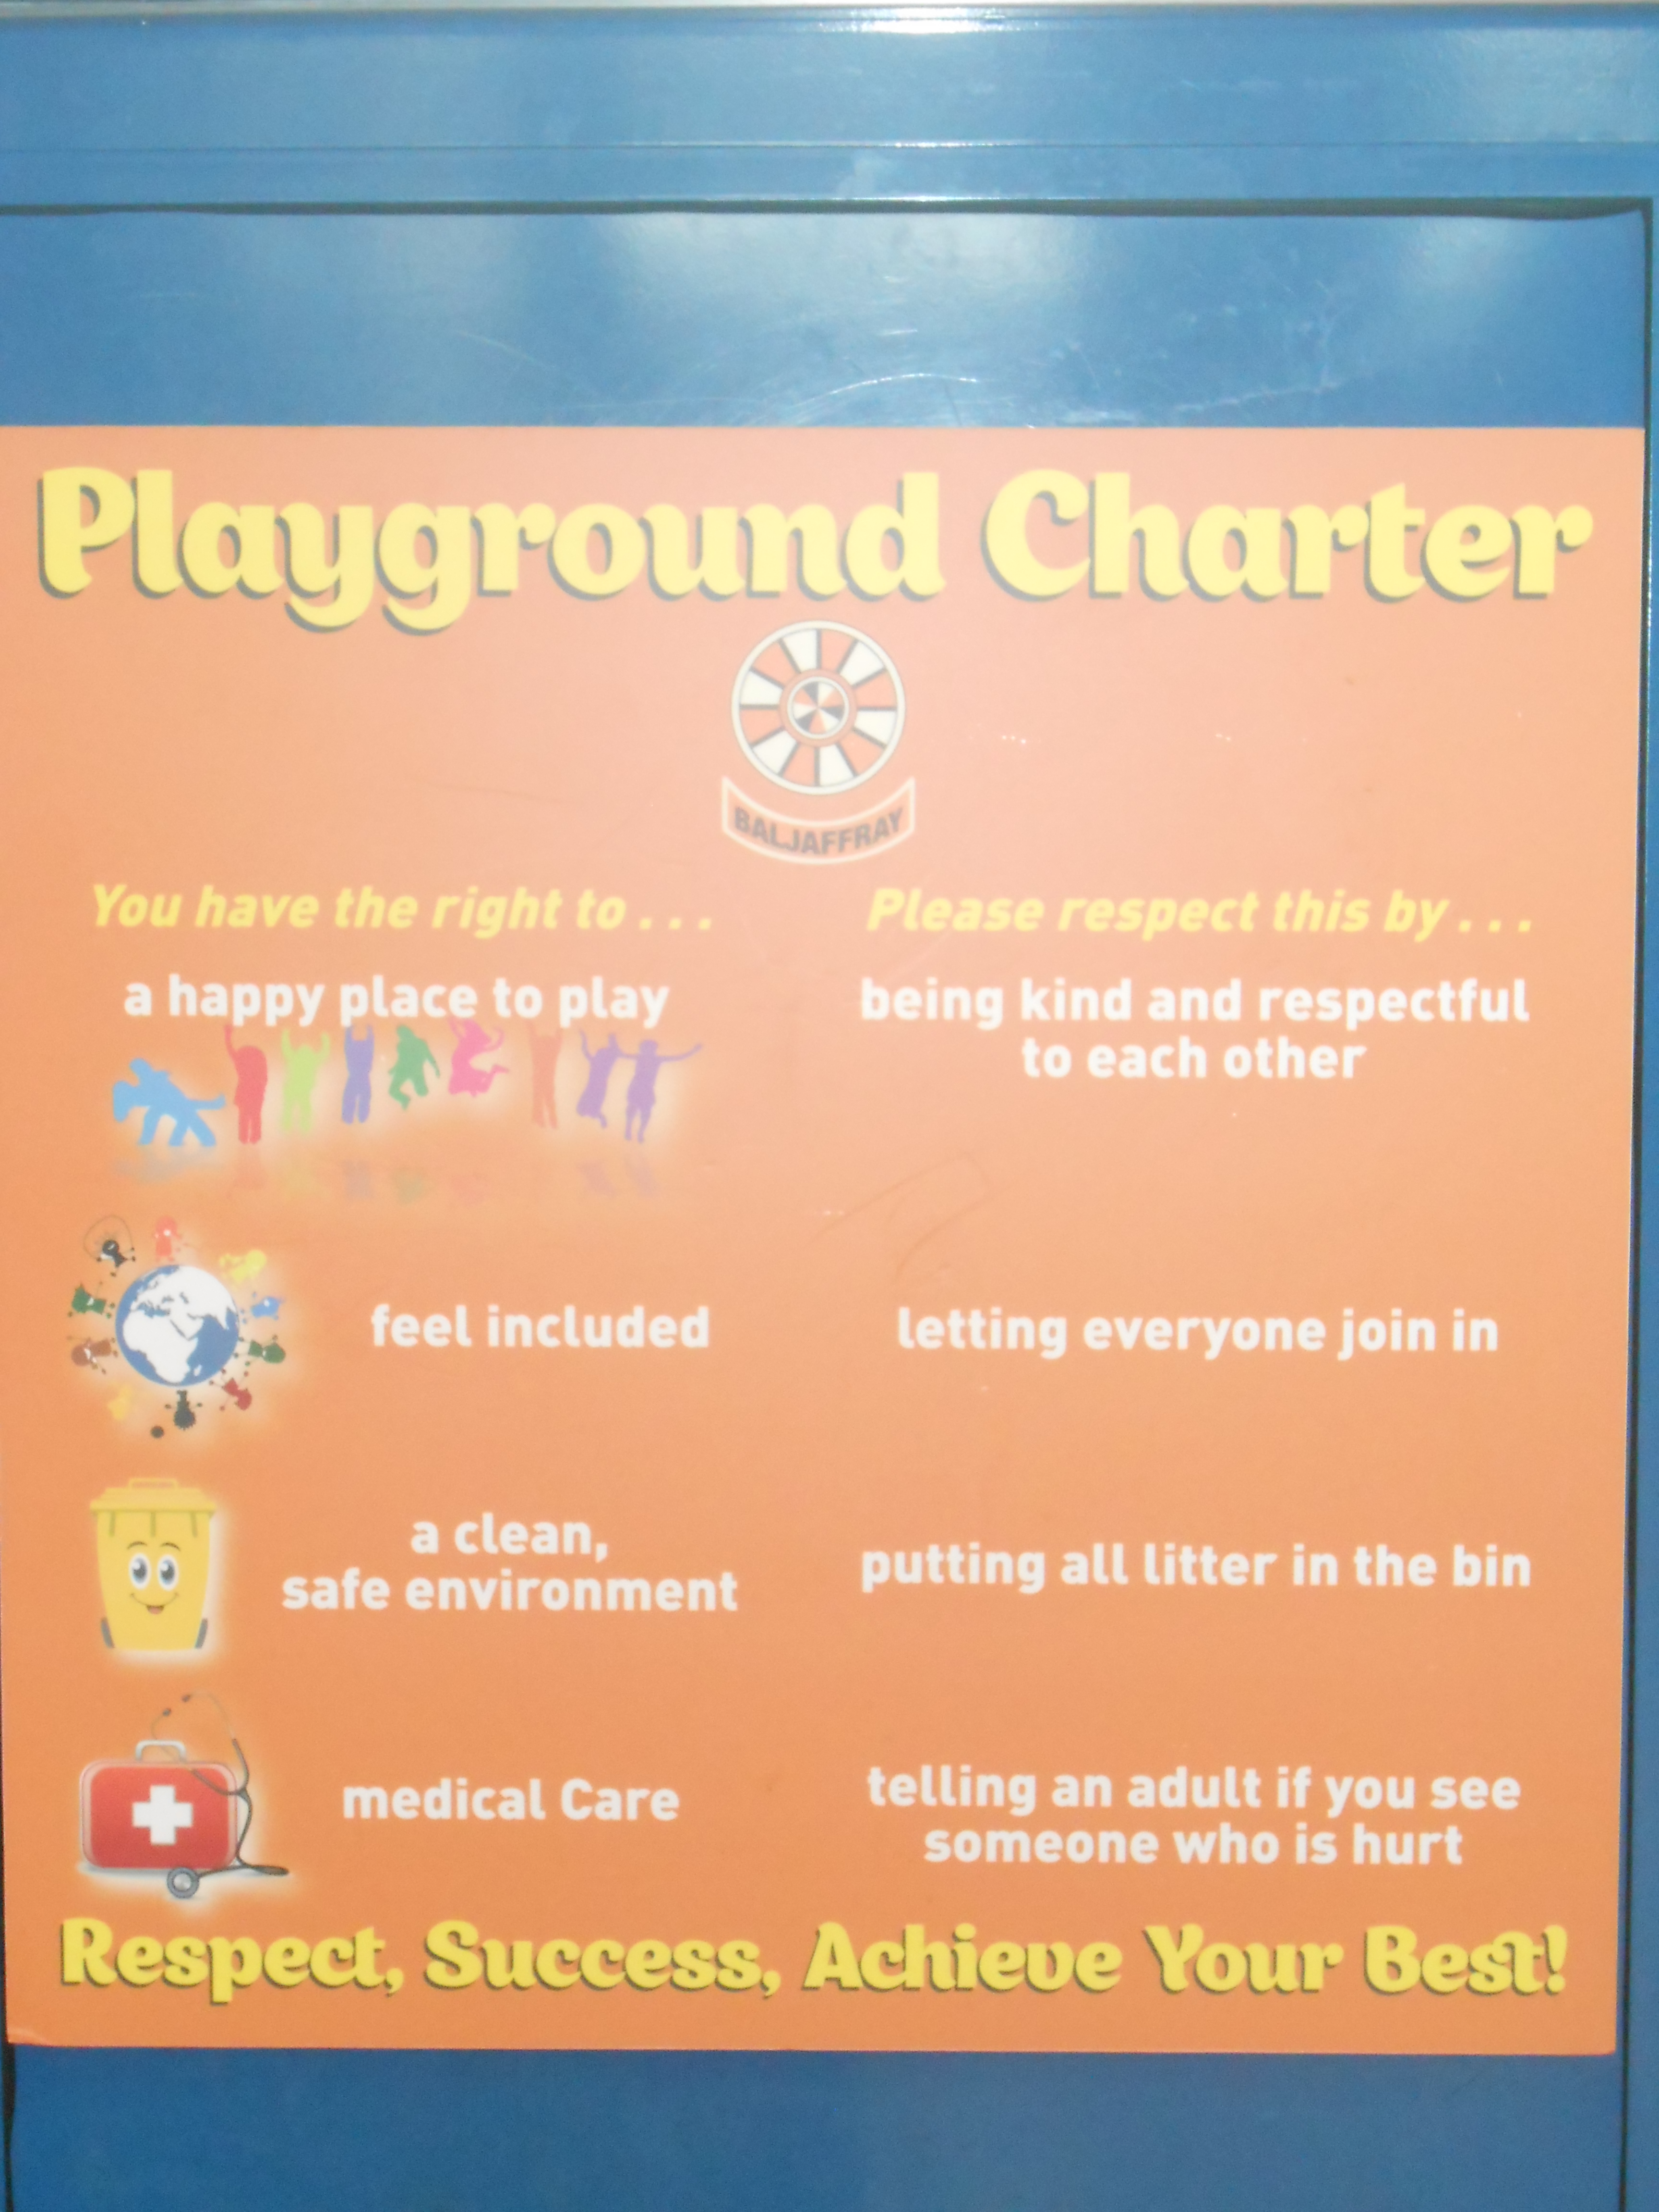 Playground charter